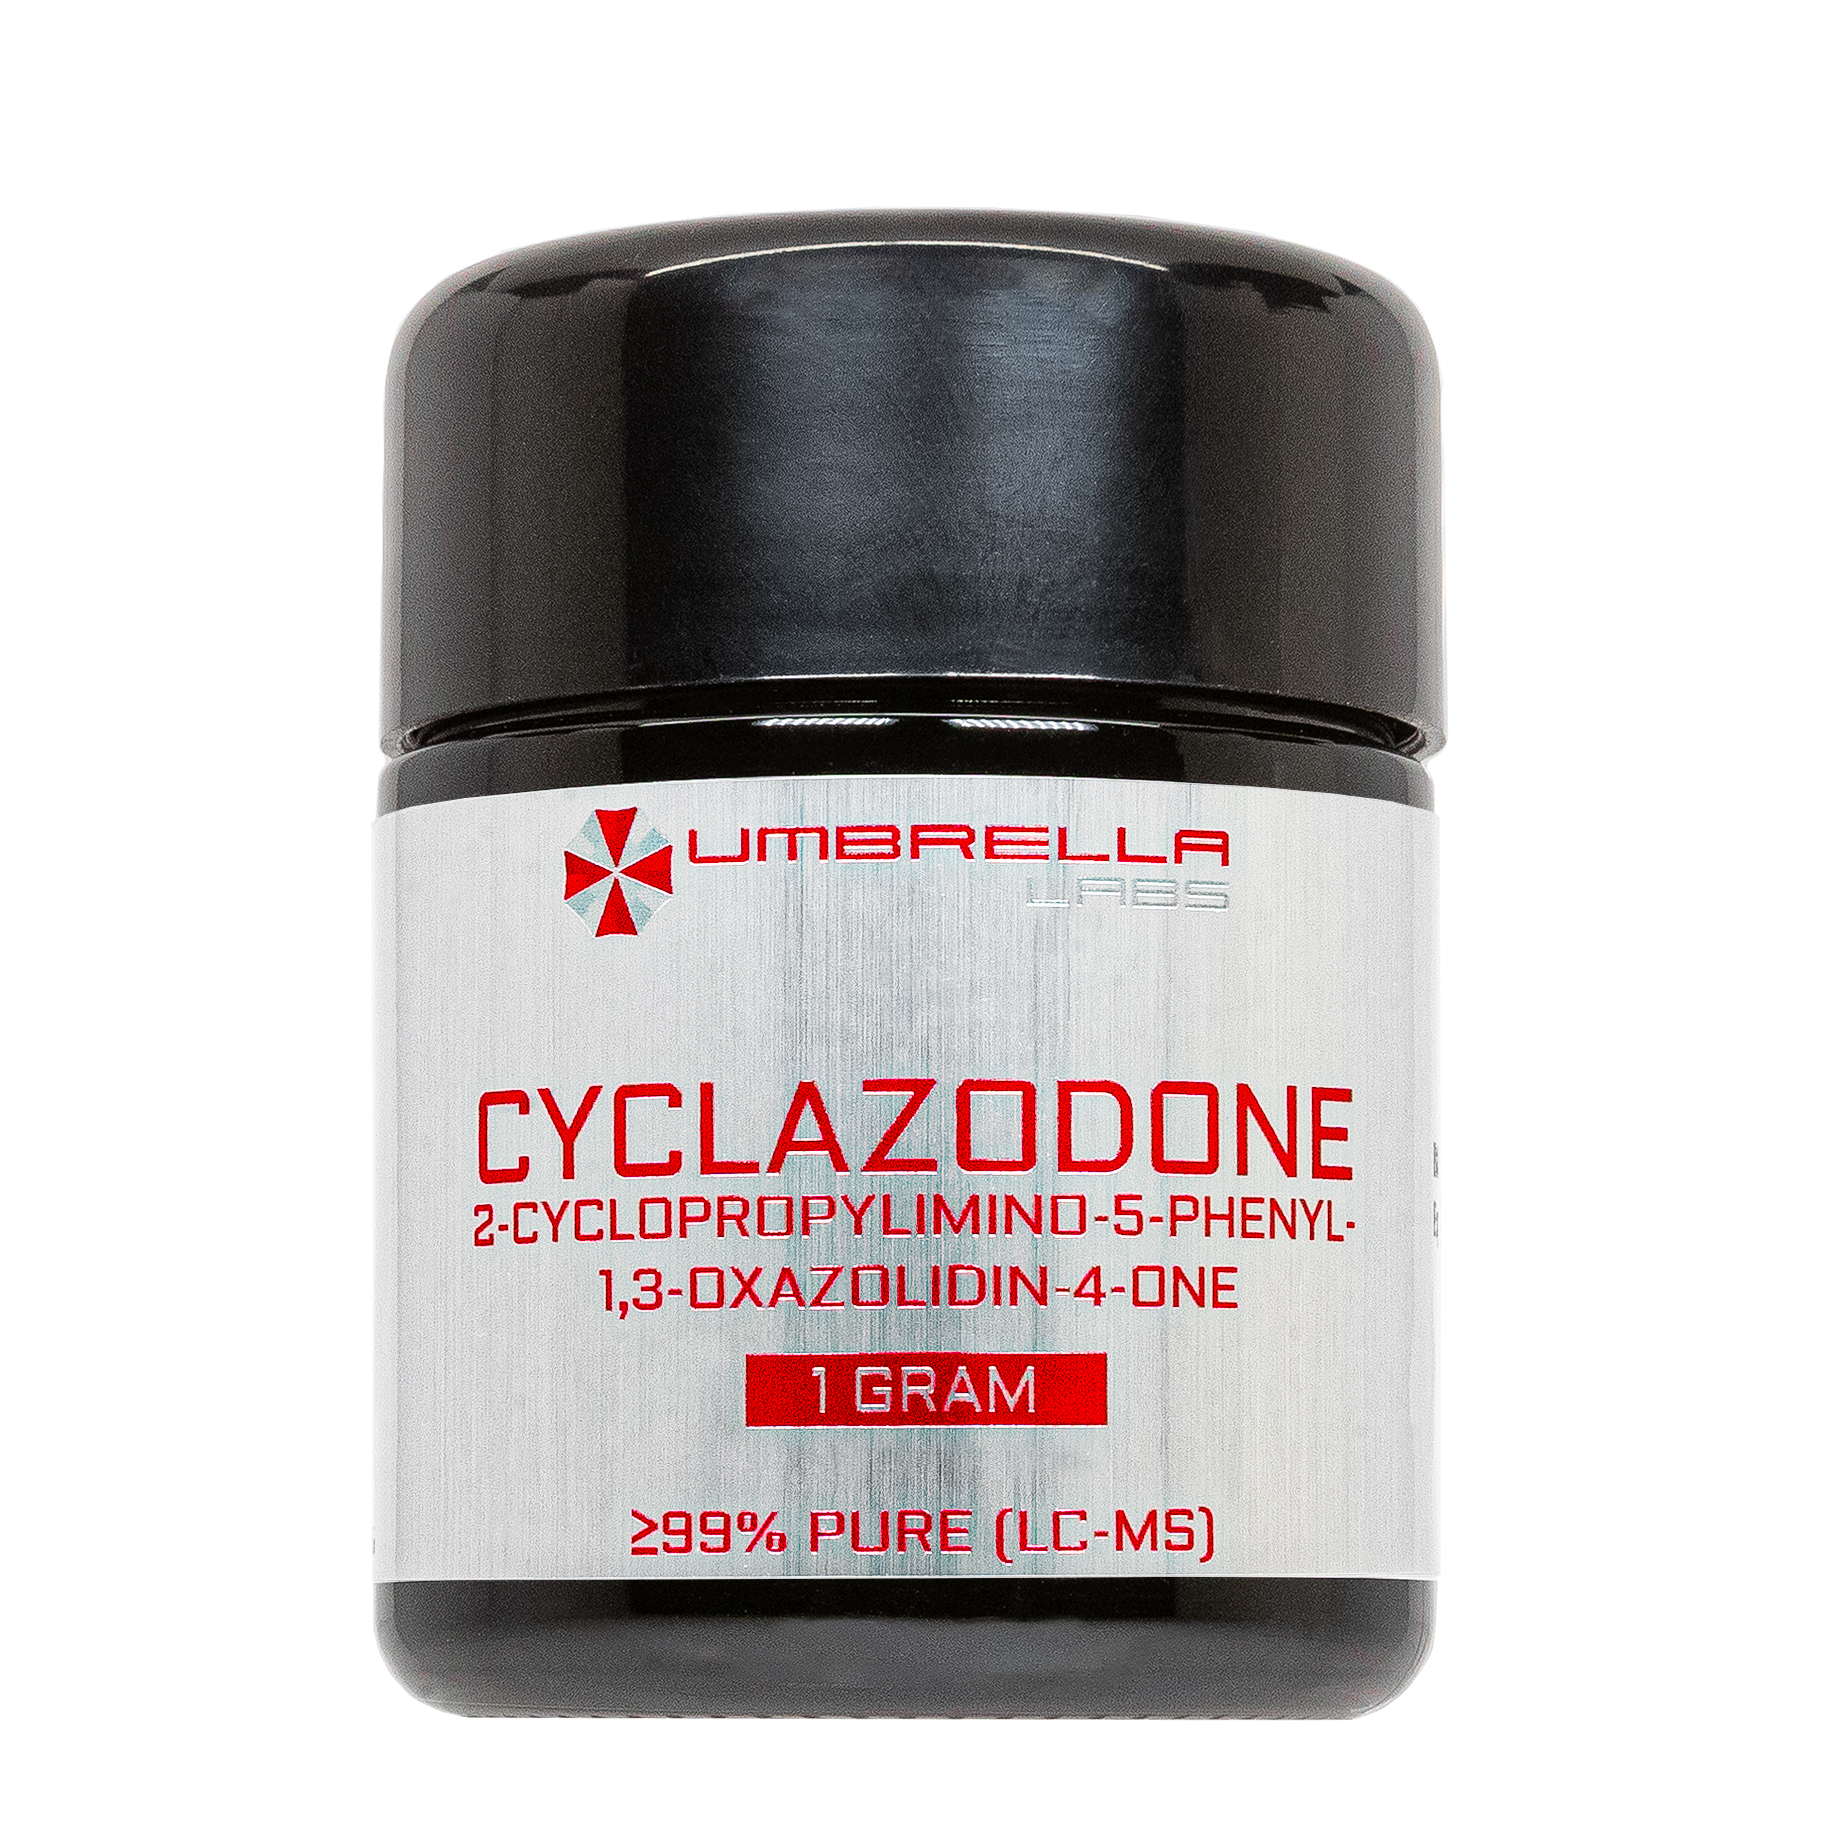 cyclazodone powder (1 gram)